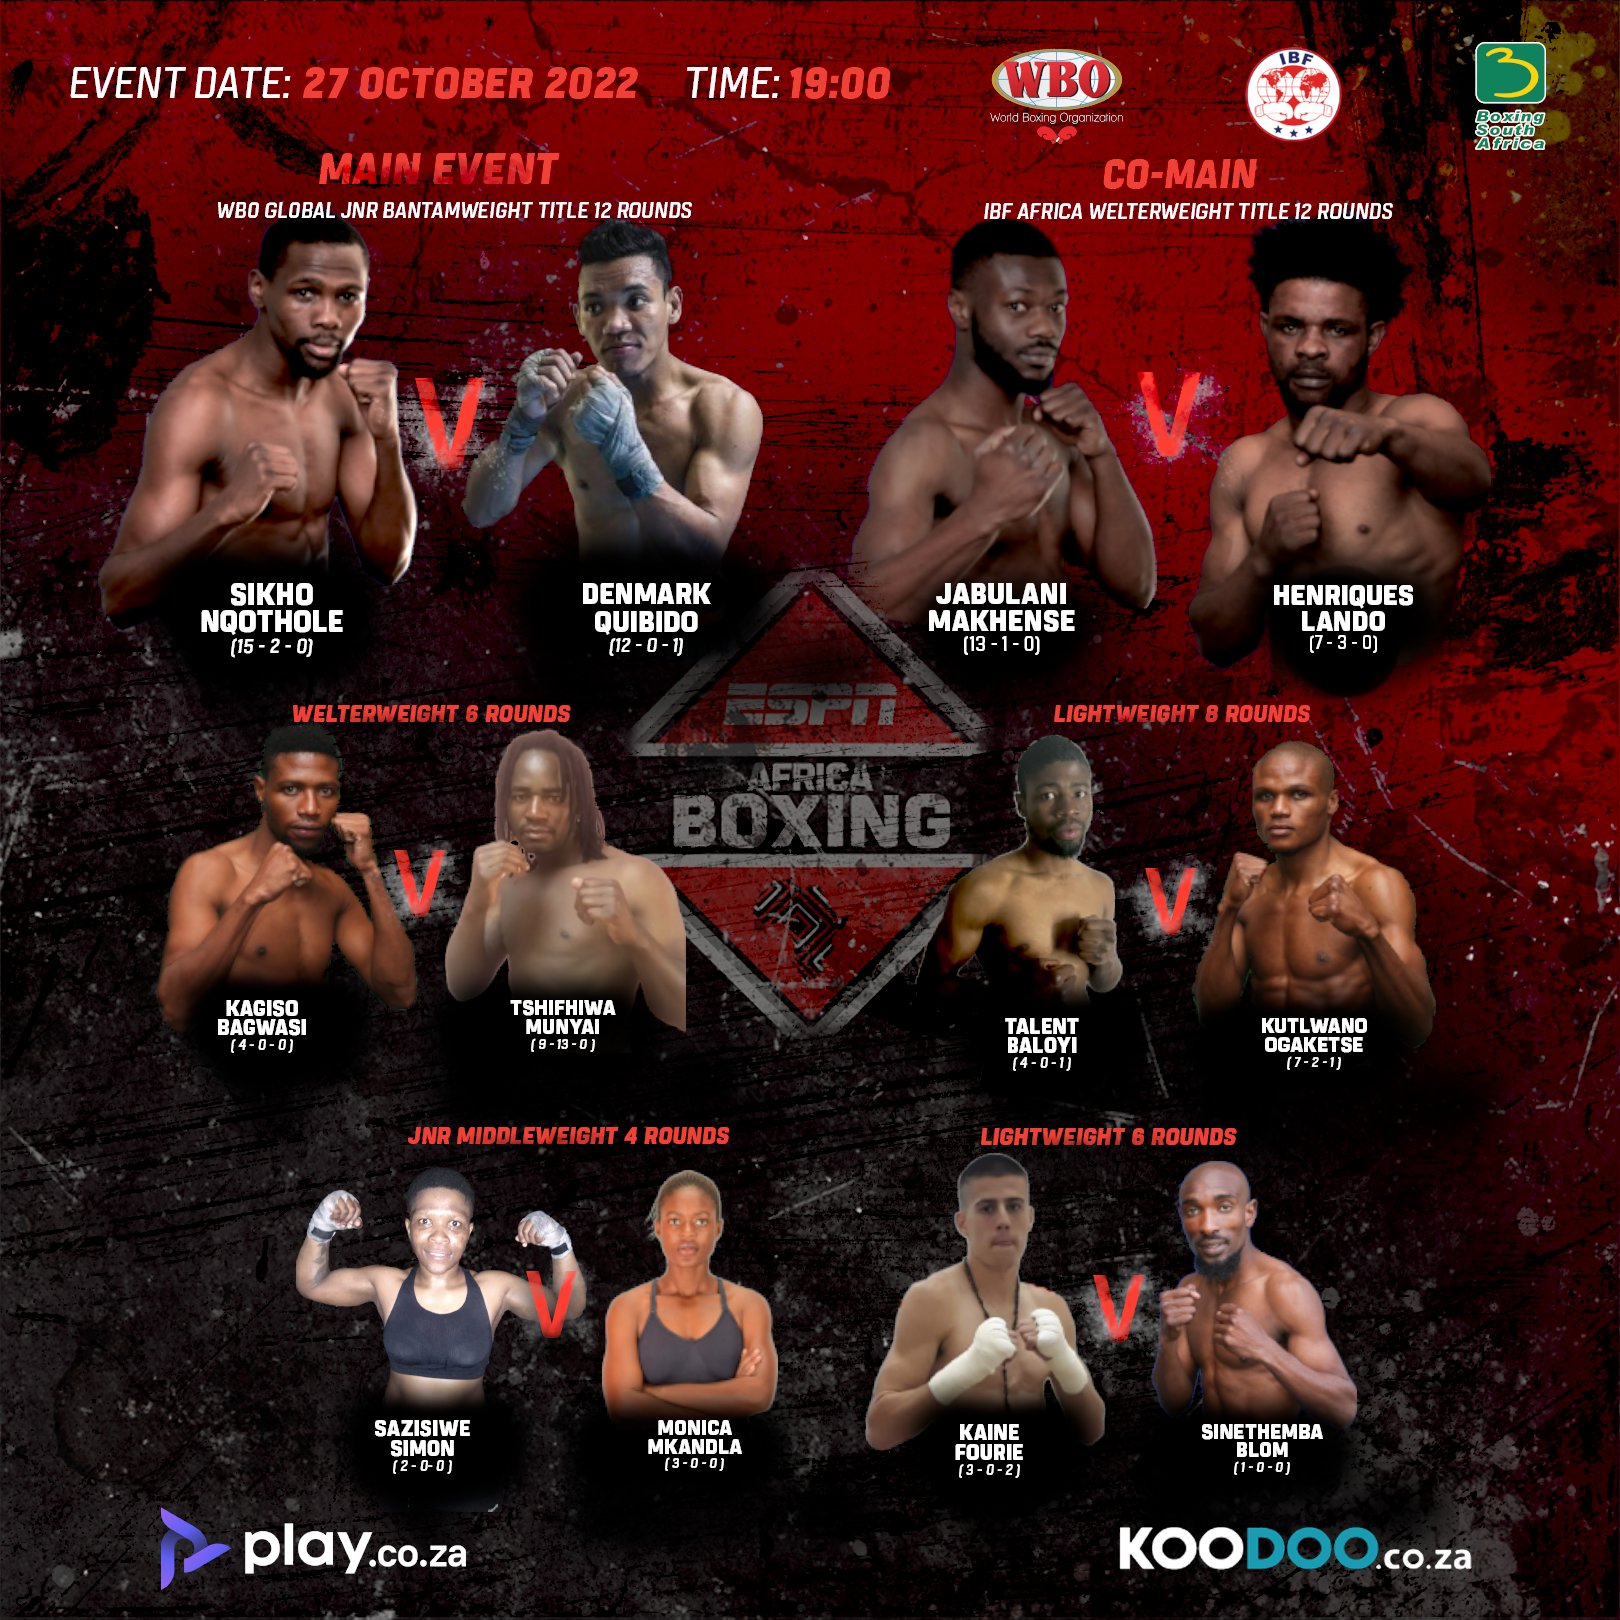 ESPN Africa Boxing 22